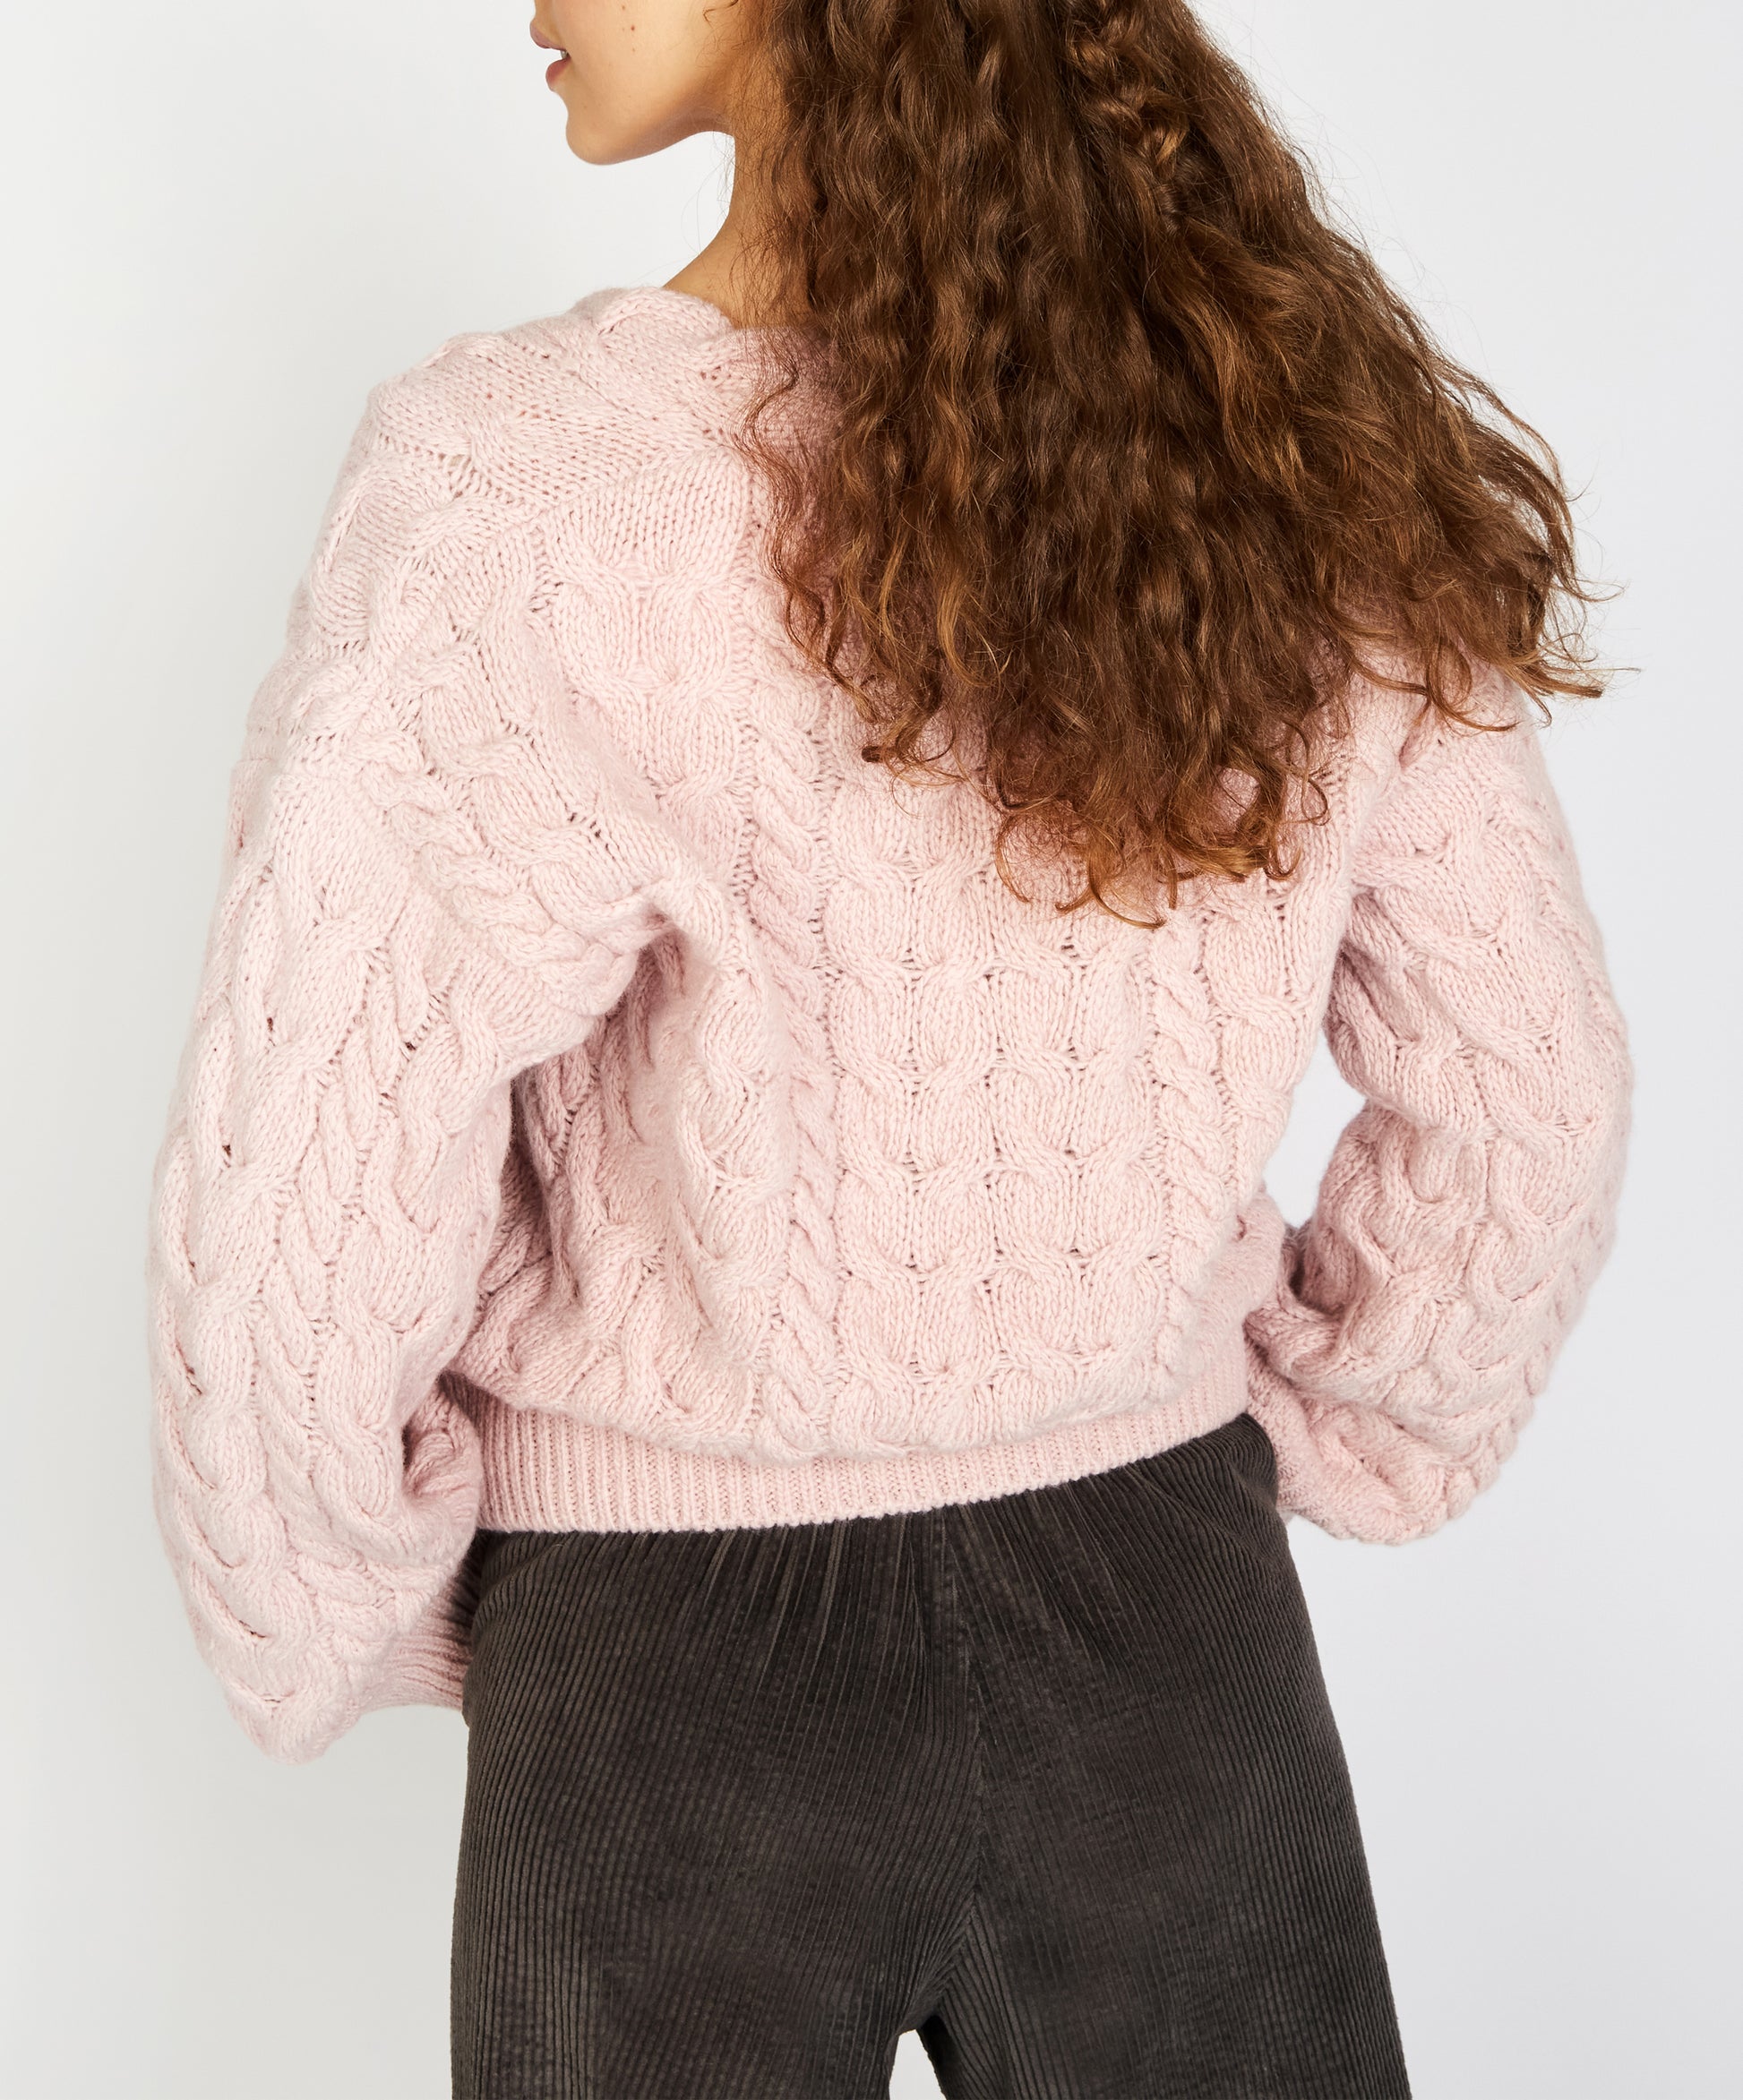 IrelandsEye Knitwear Hapenny Horseshoe Sweater Pink Mist